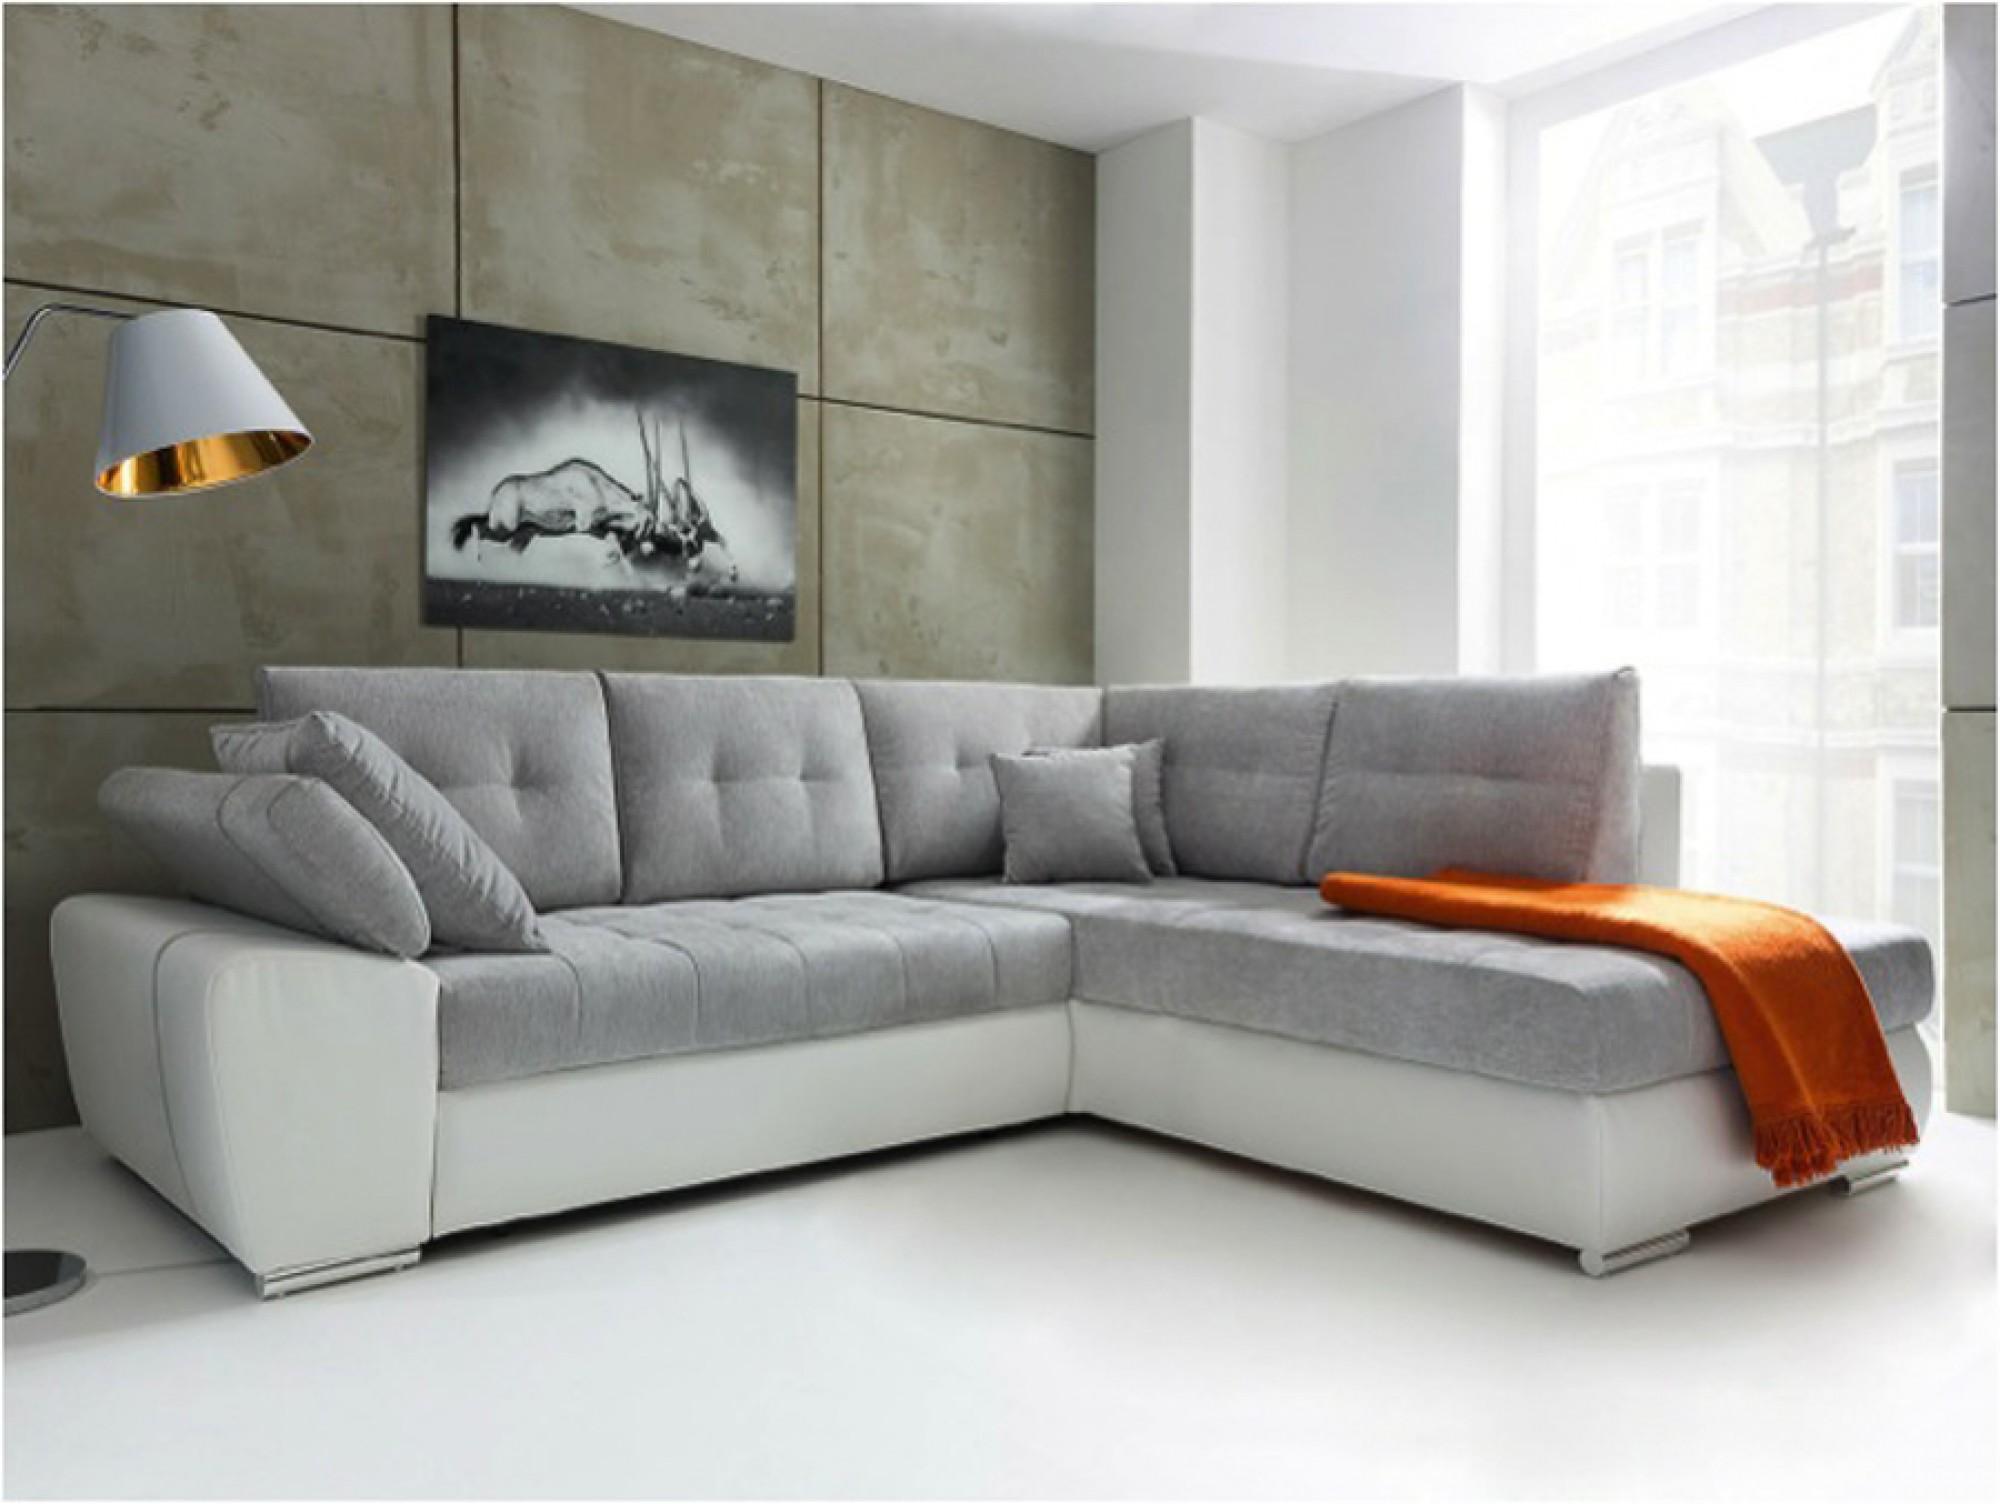 Угловые диваны хорошего качества. Красивые современные диваны. Угловой диван в интерьере. Дизайнерские диваны для гостиной. Диван с углом.